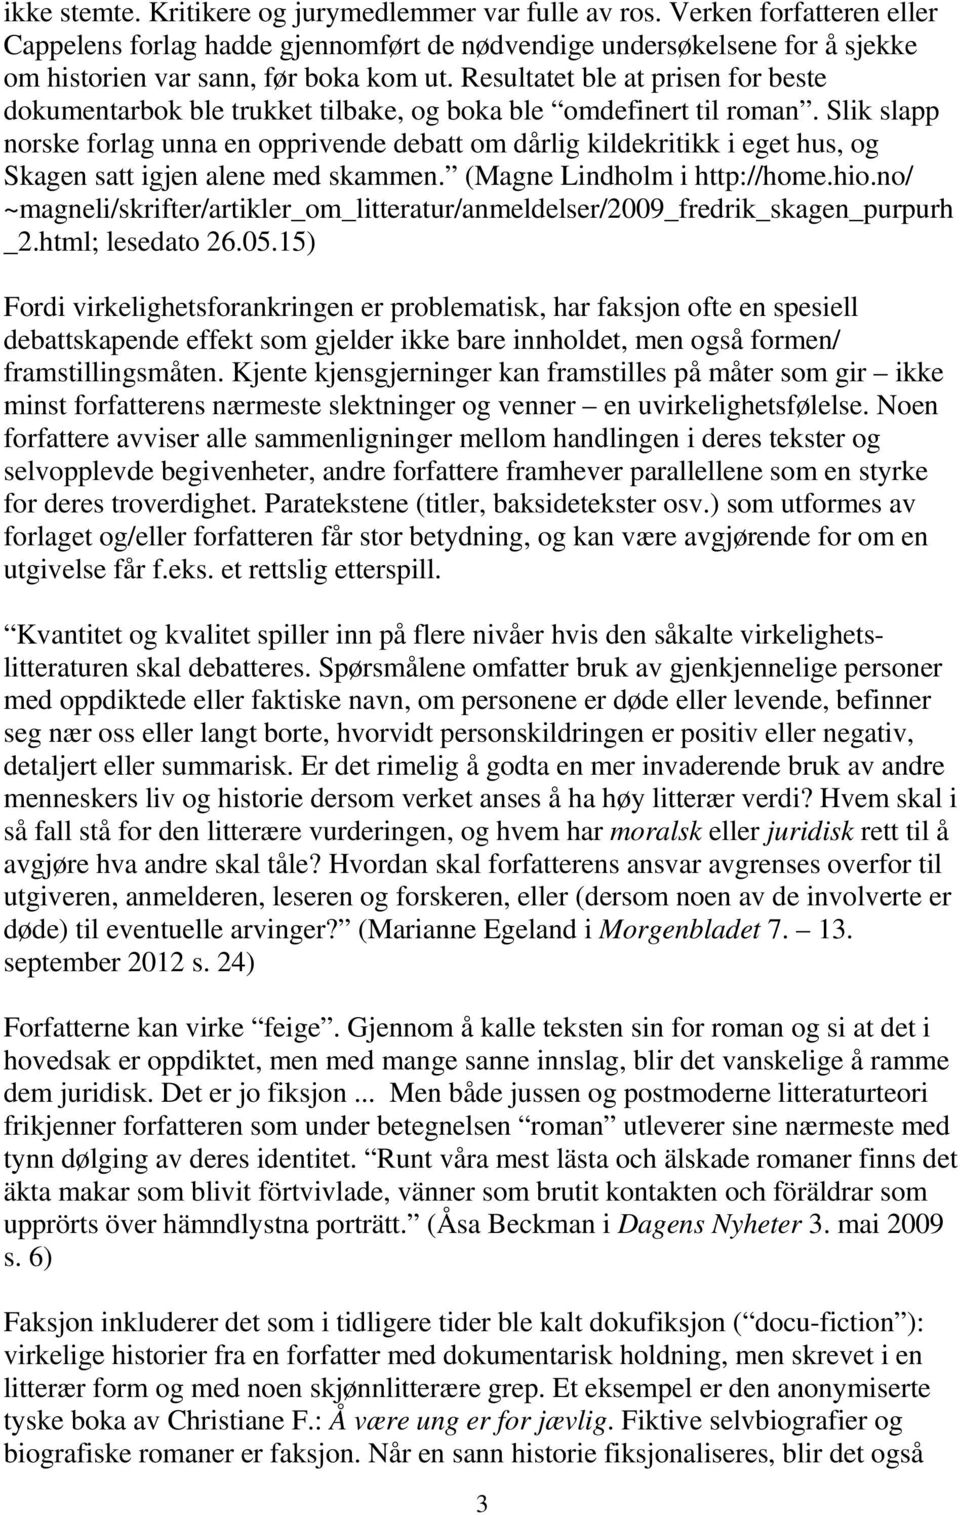 Slik slapp norske forlag unna en opprivende debatt om dårlig kildekritikk i eget hus, og Skagen satt igjen alene med skammen. (Magne Lindholm i http://home.hio.